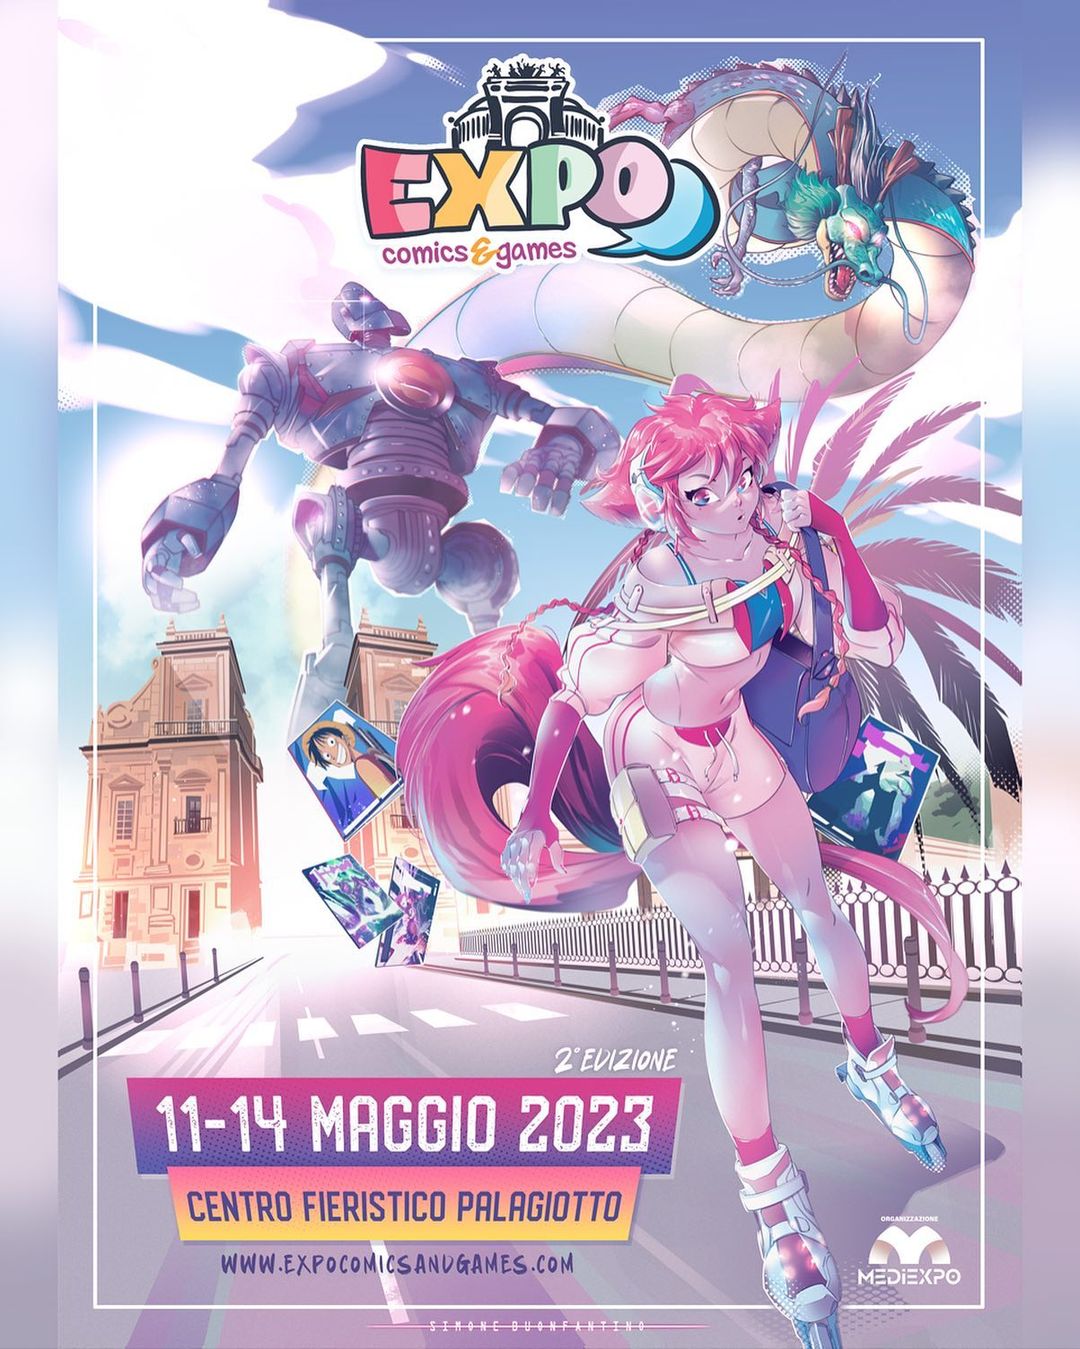 La seconda edizione di Expo Comics & Games: dall’11 al 14 maggio 2023 al PalaGiotto